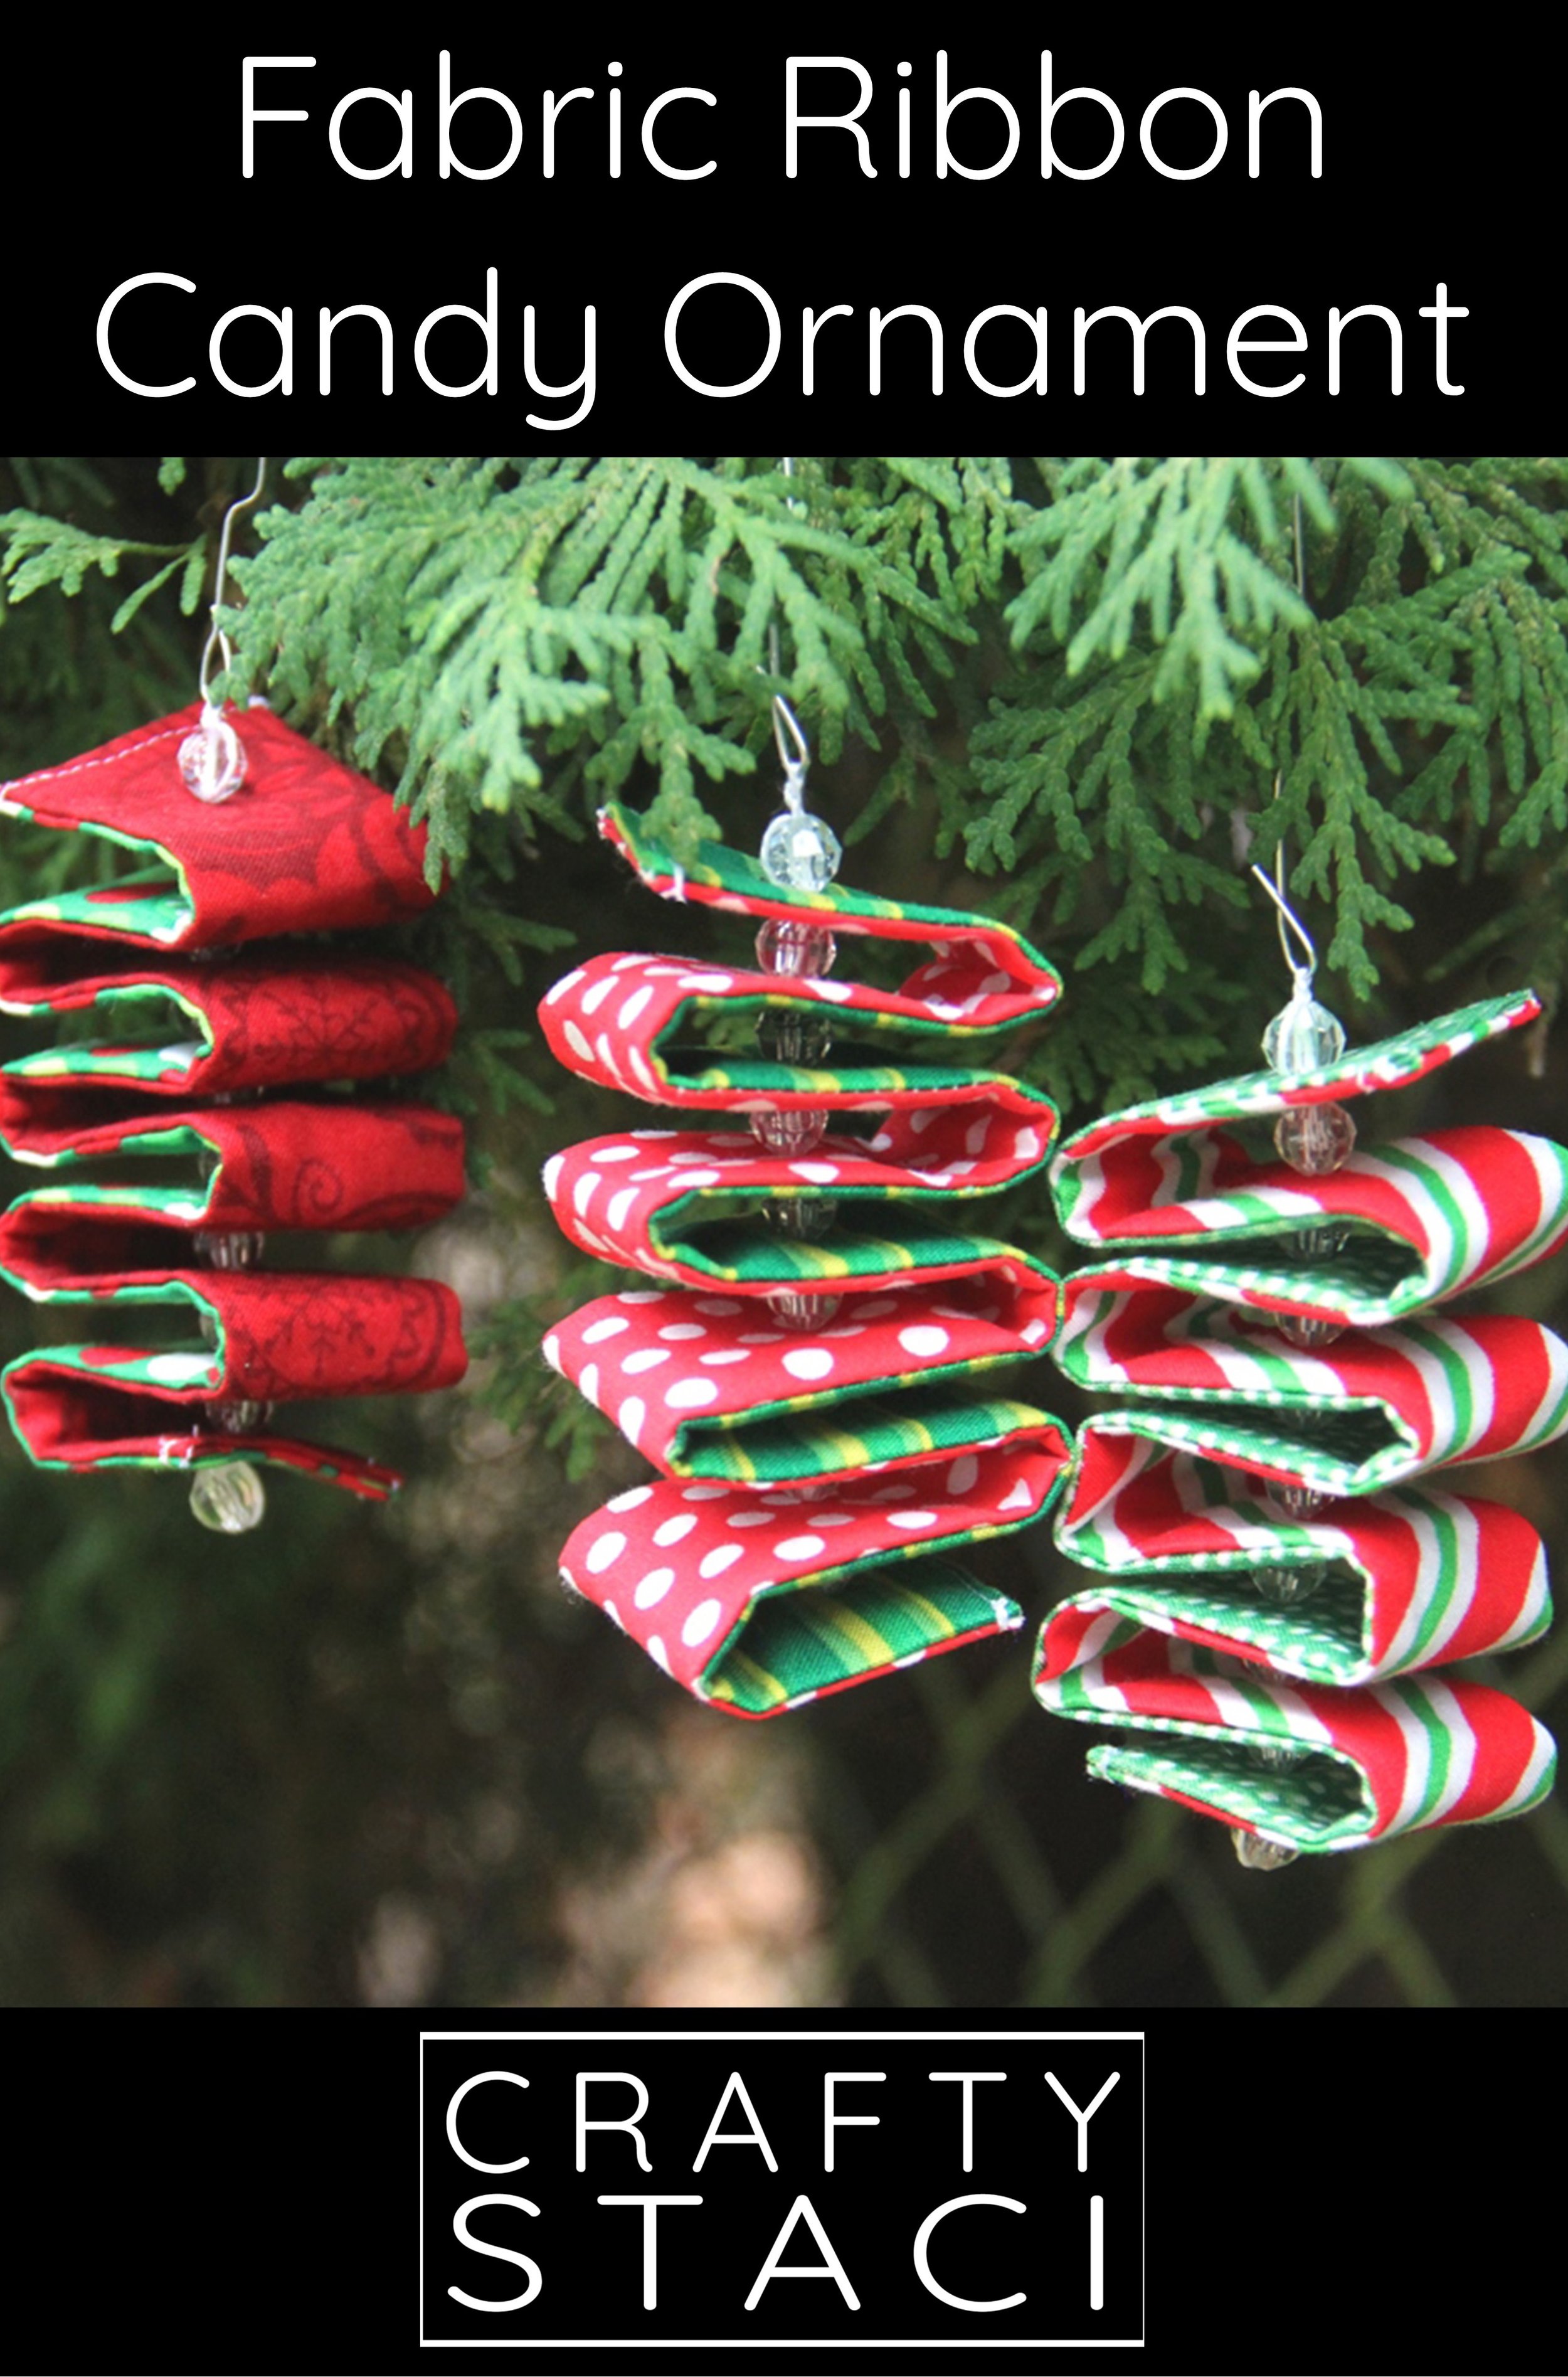 Buffalo Check Perler Bead Christmas Ornaments - The Scrap Shoppe